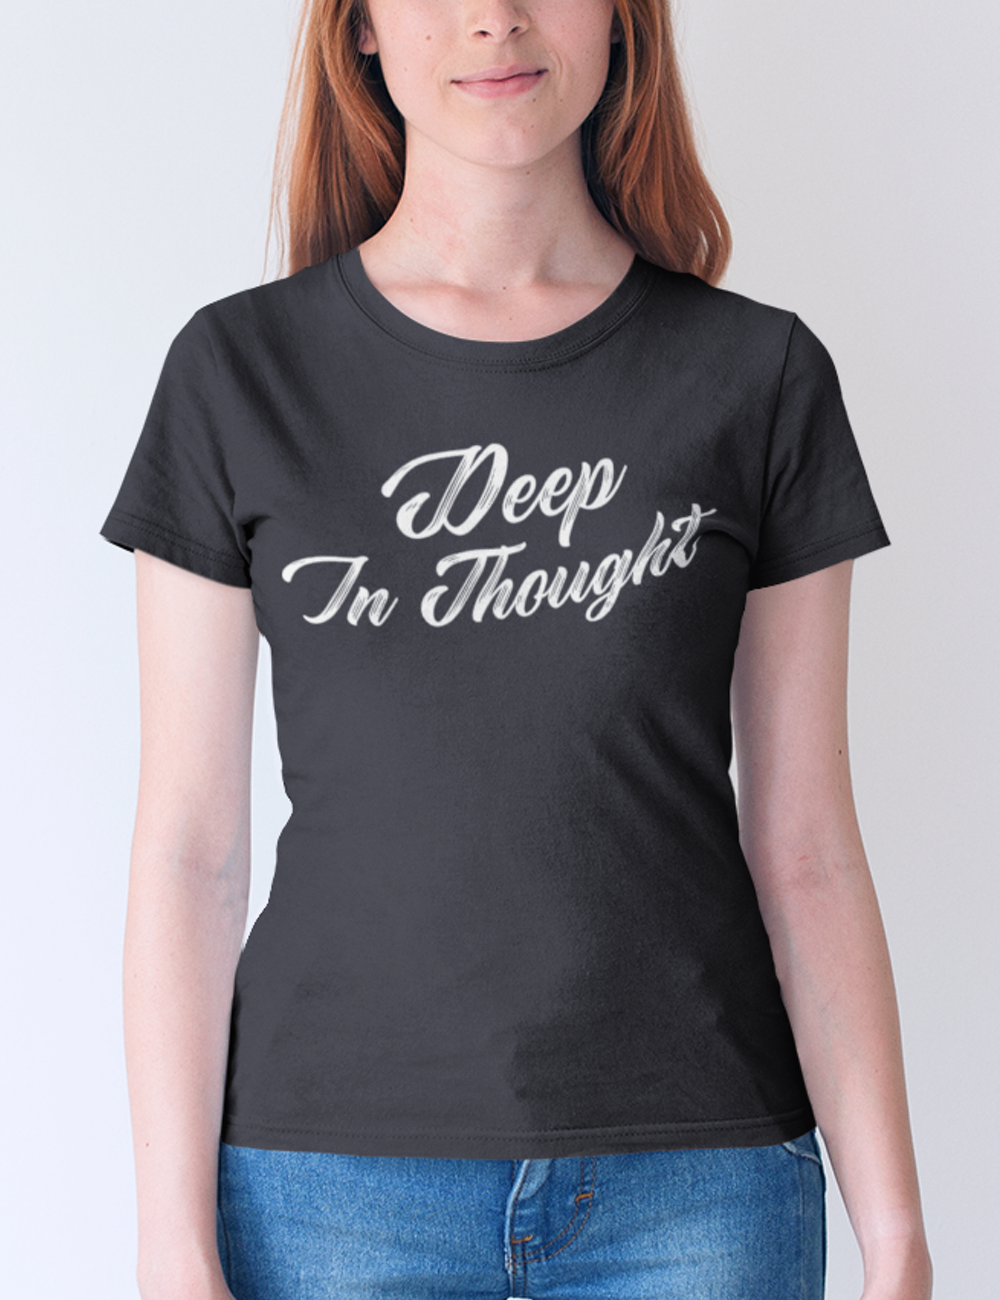 Deep In Thought Women's Classic T-Shirt OniTakai